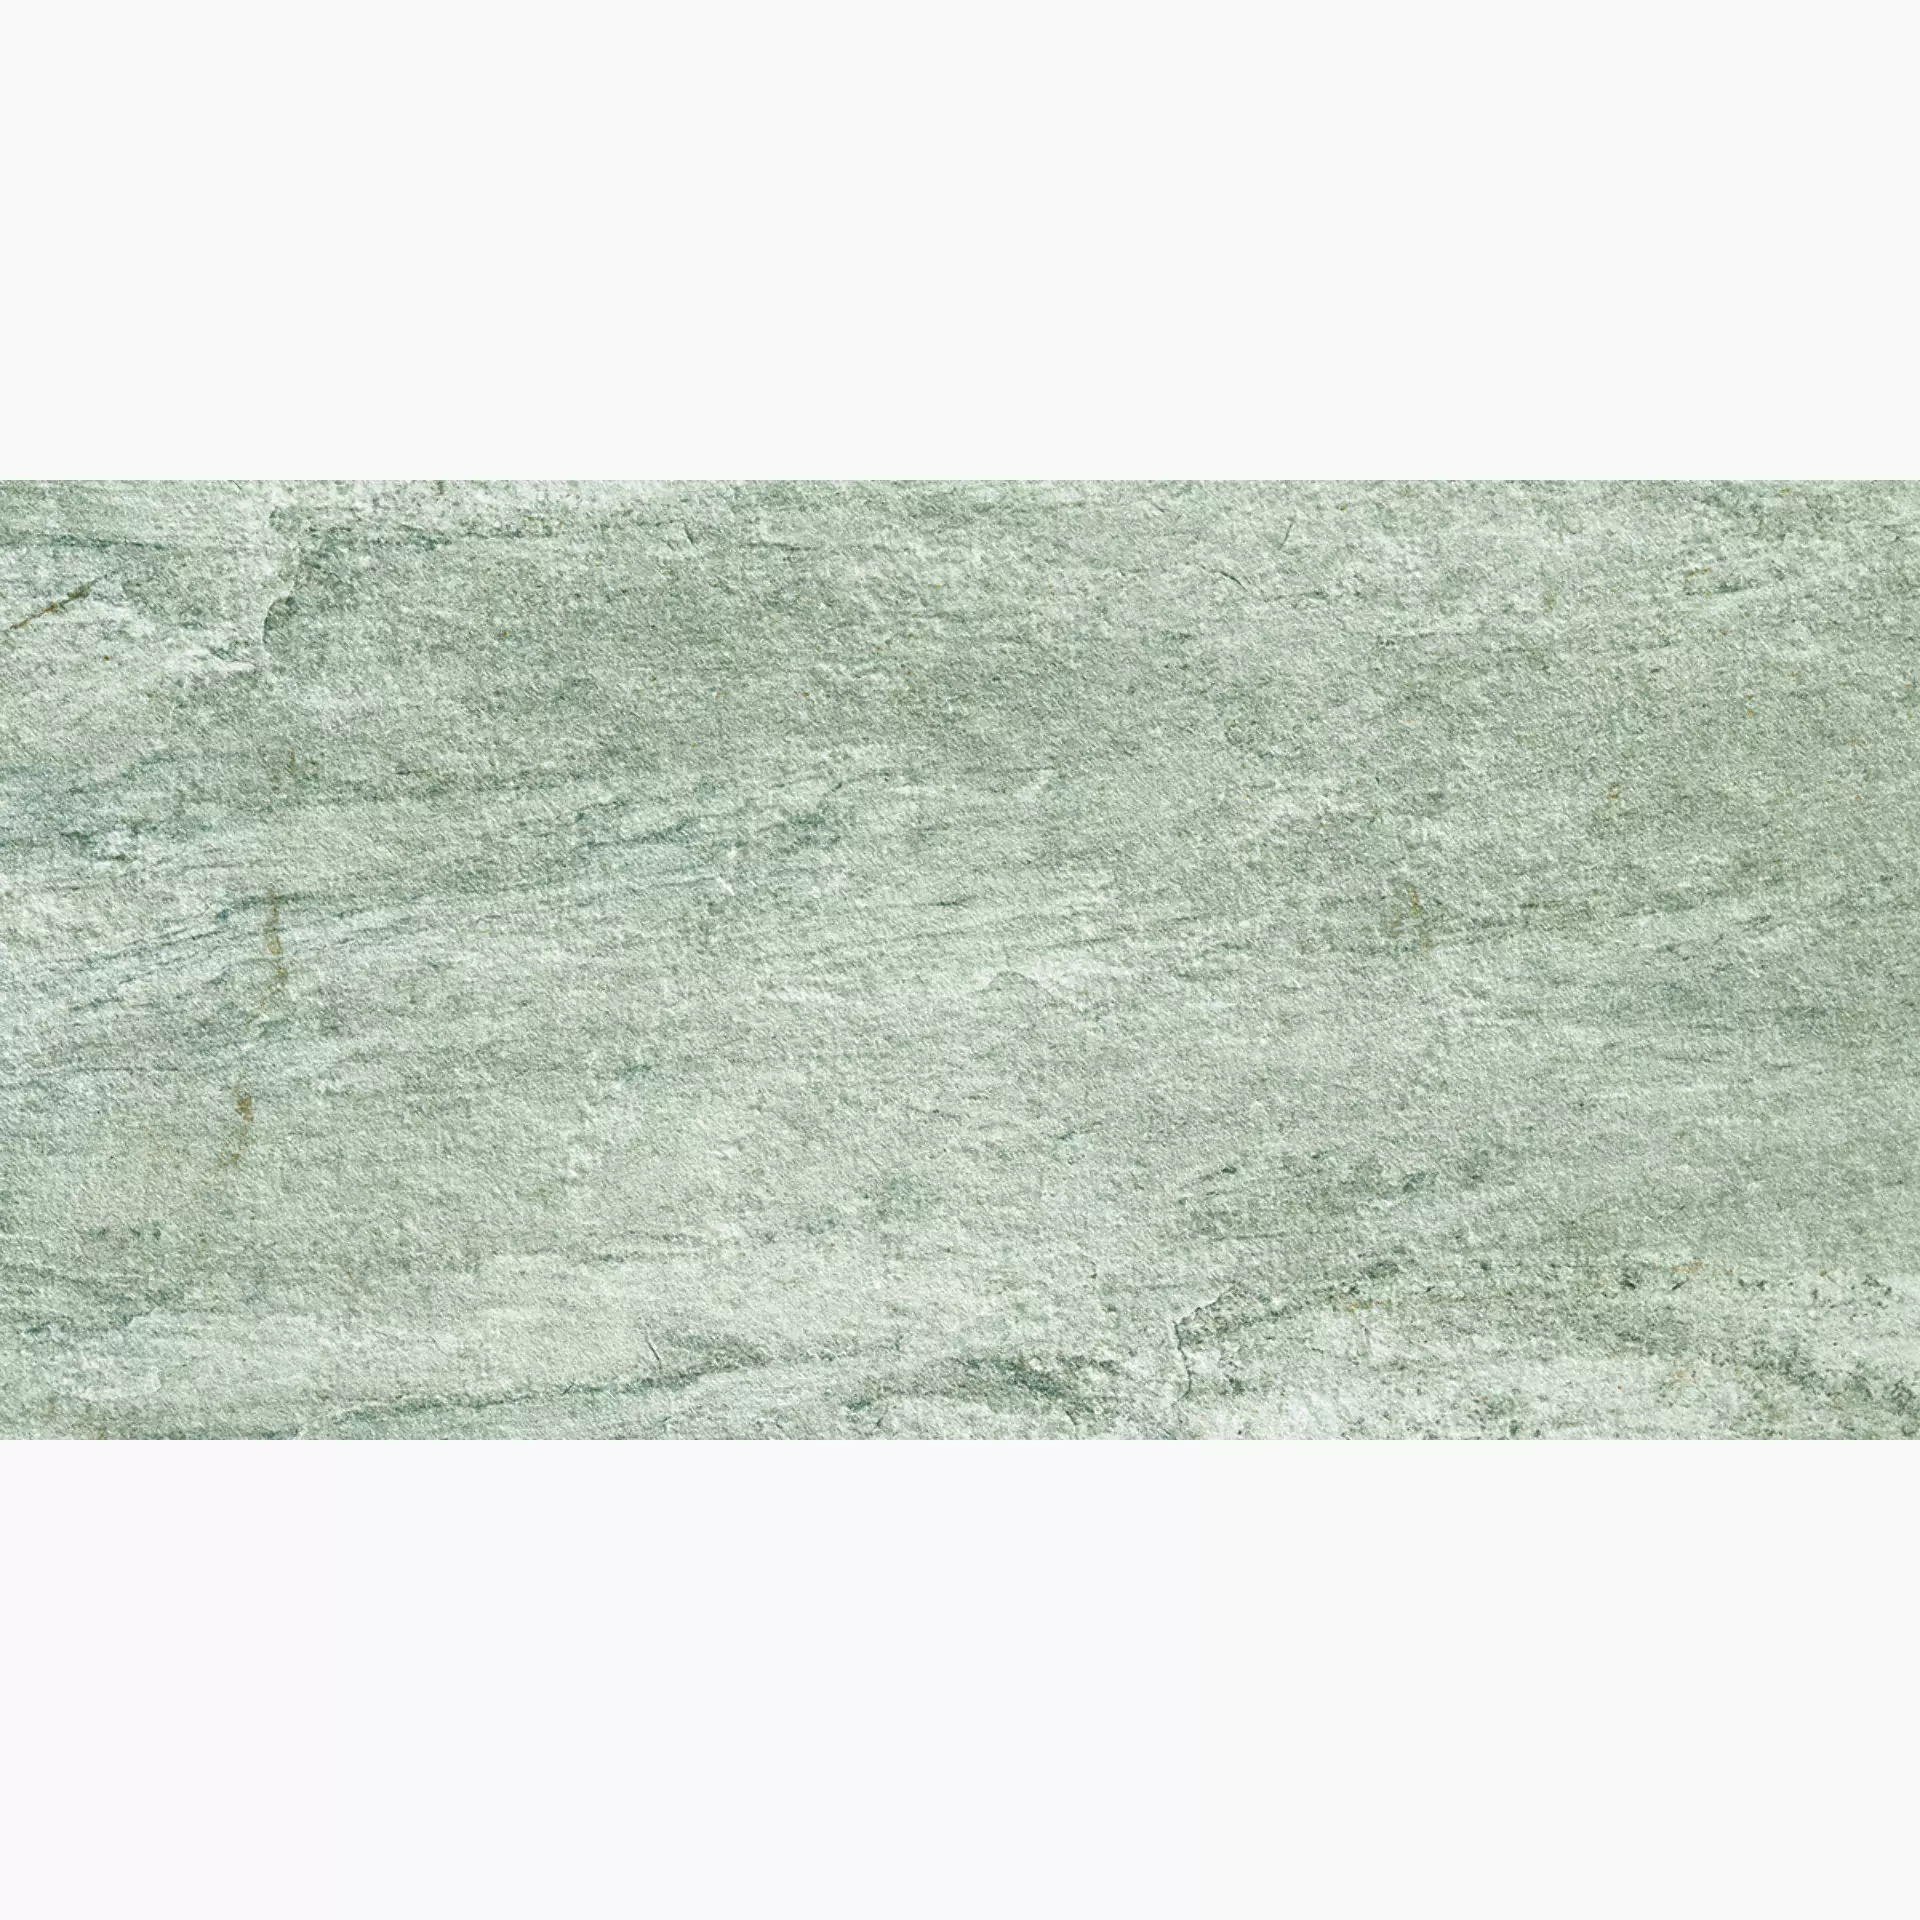 Alfalux Stone Quartz Perla Naturale 8201011 60x120cm rectified 9mm